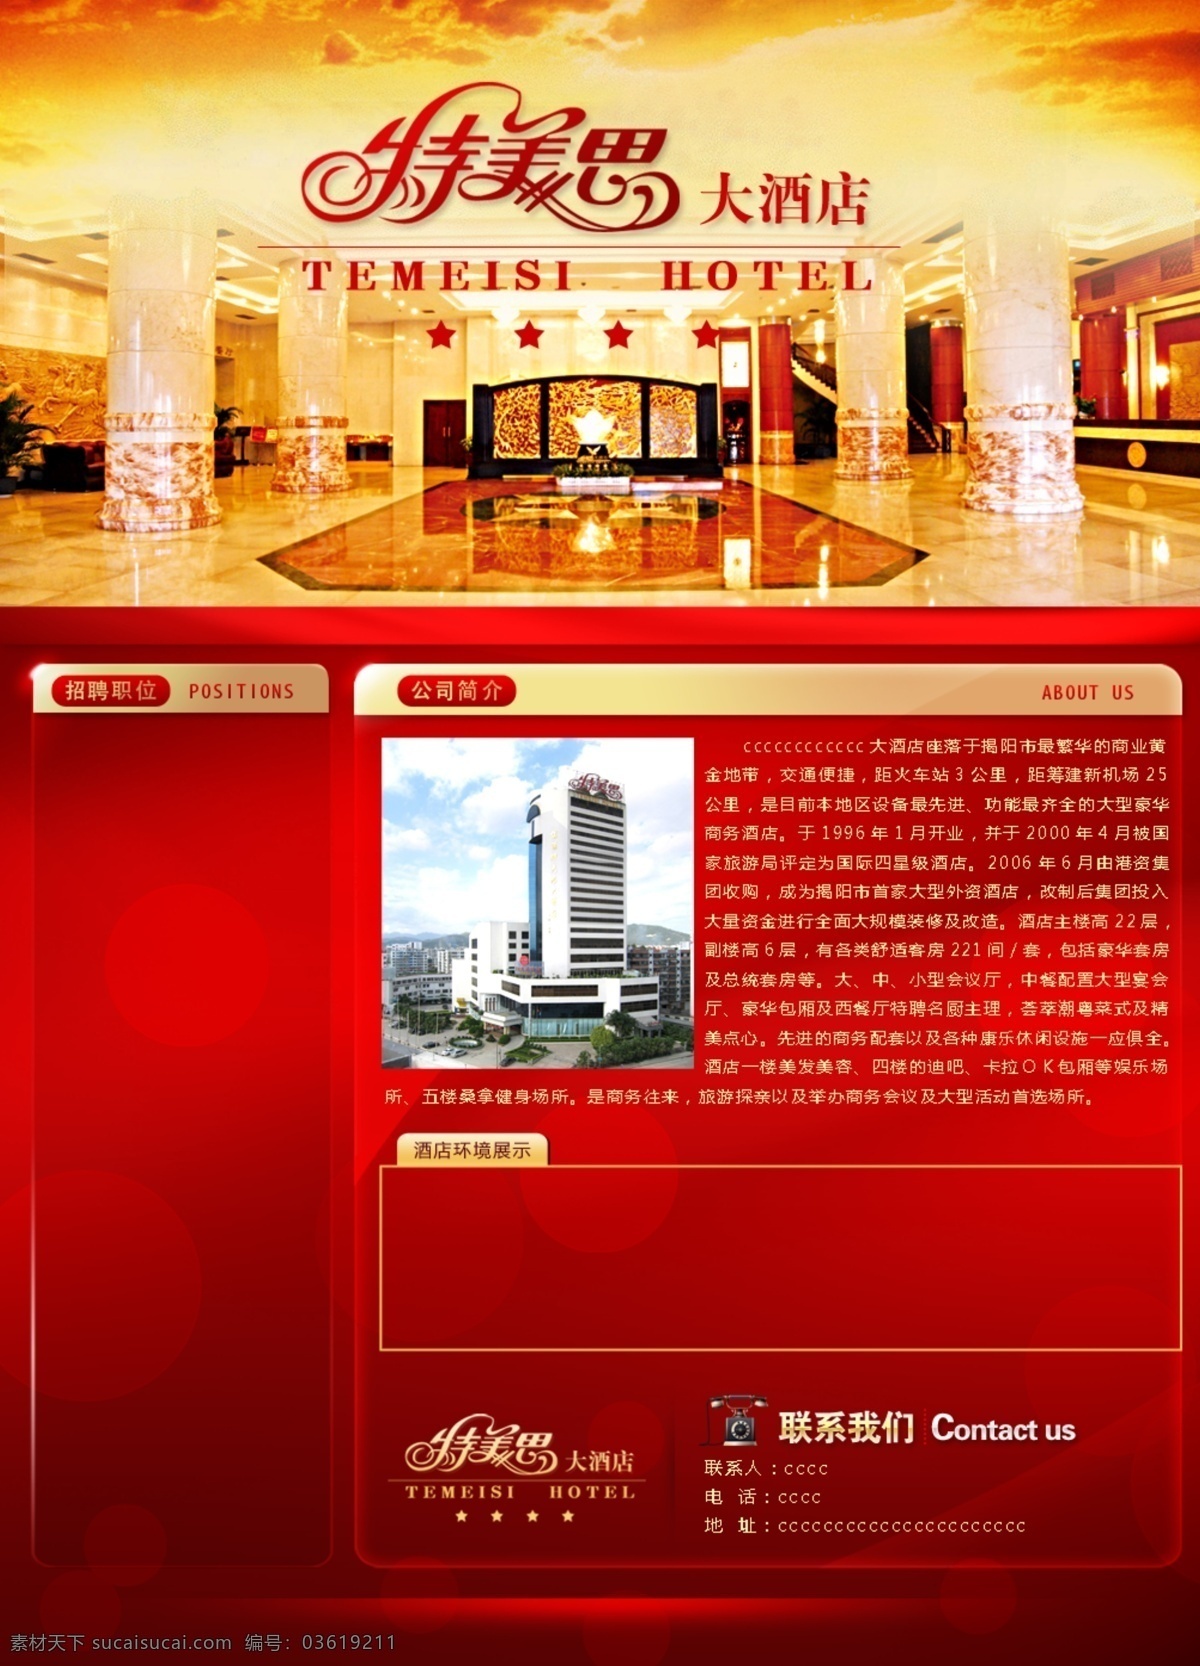 酒店 网页模板 高档 红色 酒店网页模板 源文件 中文模版 网页素材